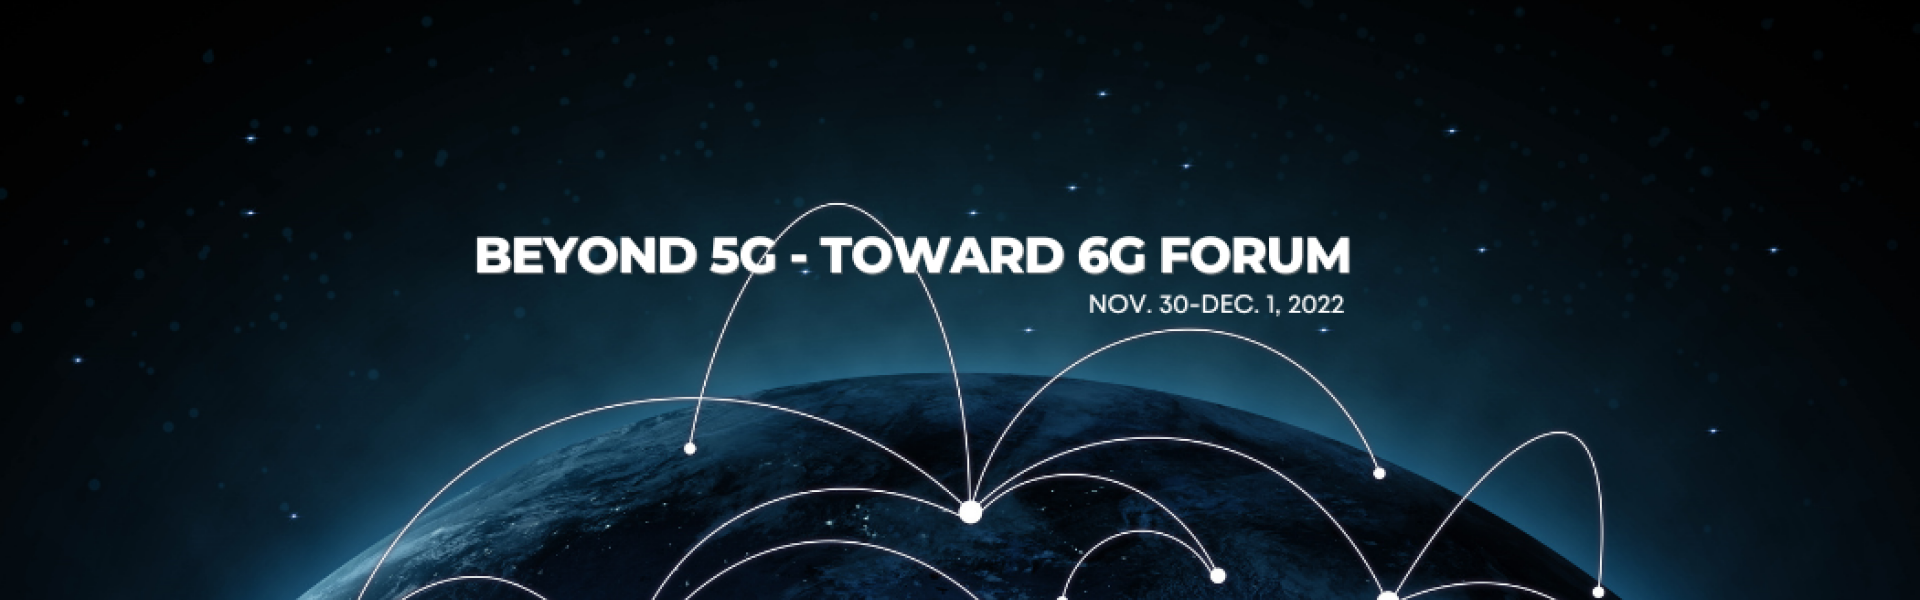 6G Forum - Space Banner